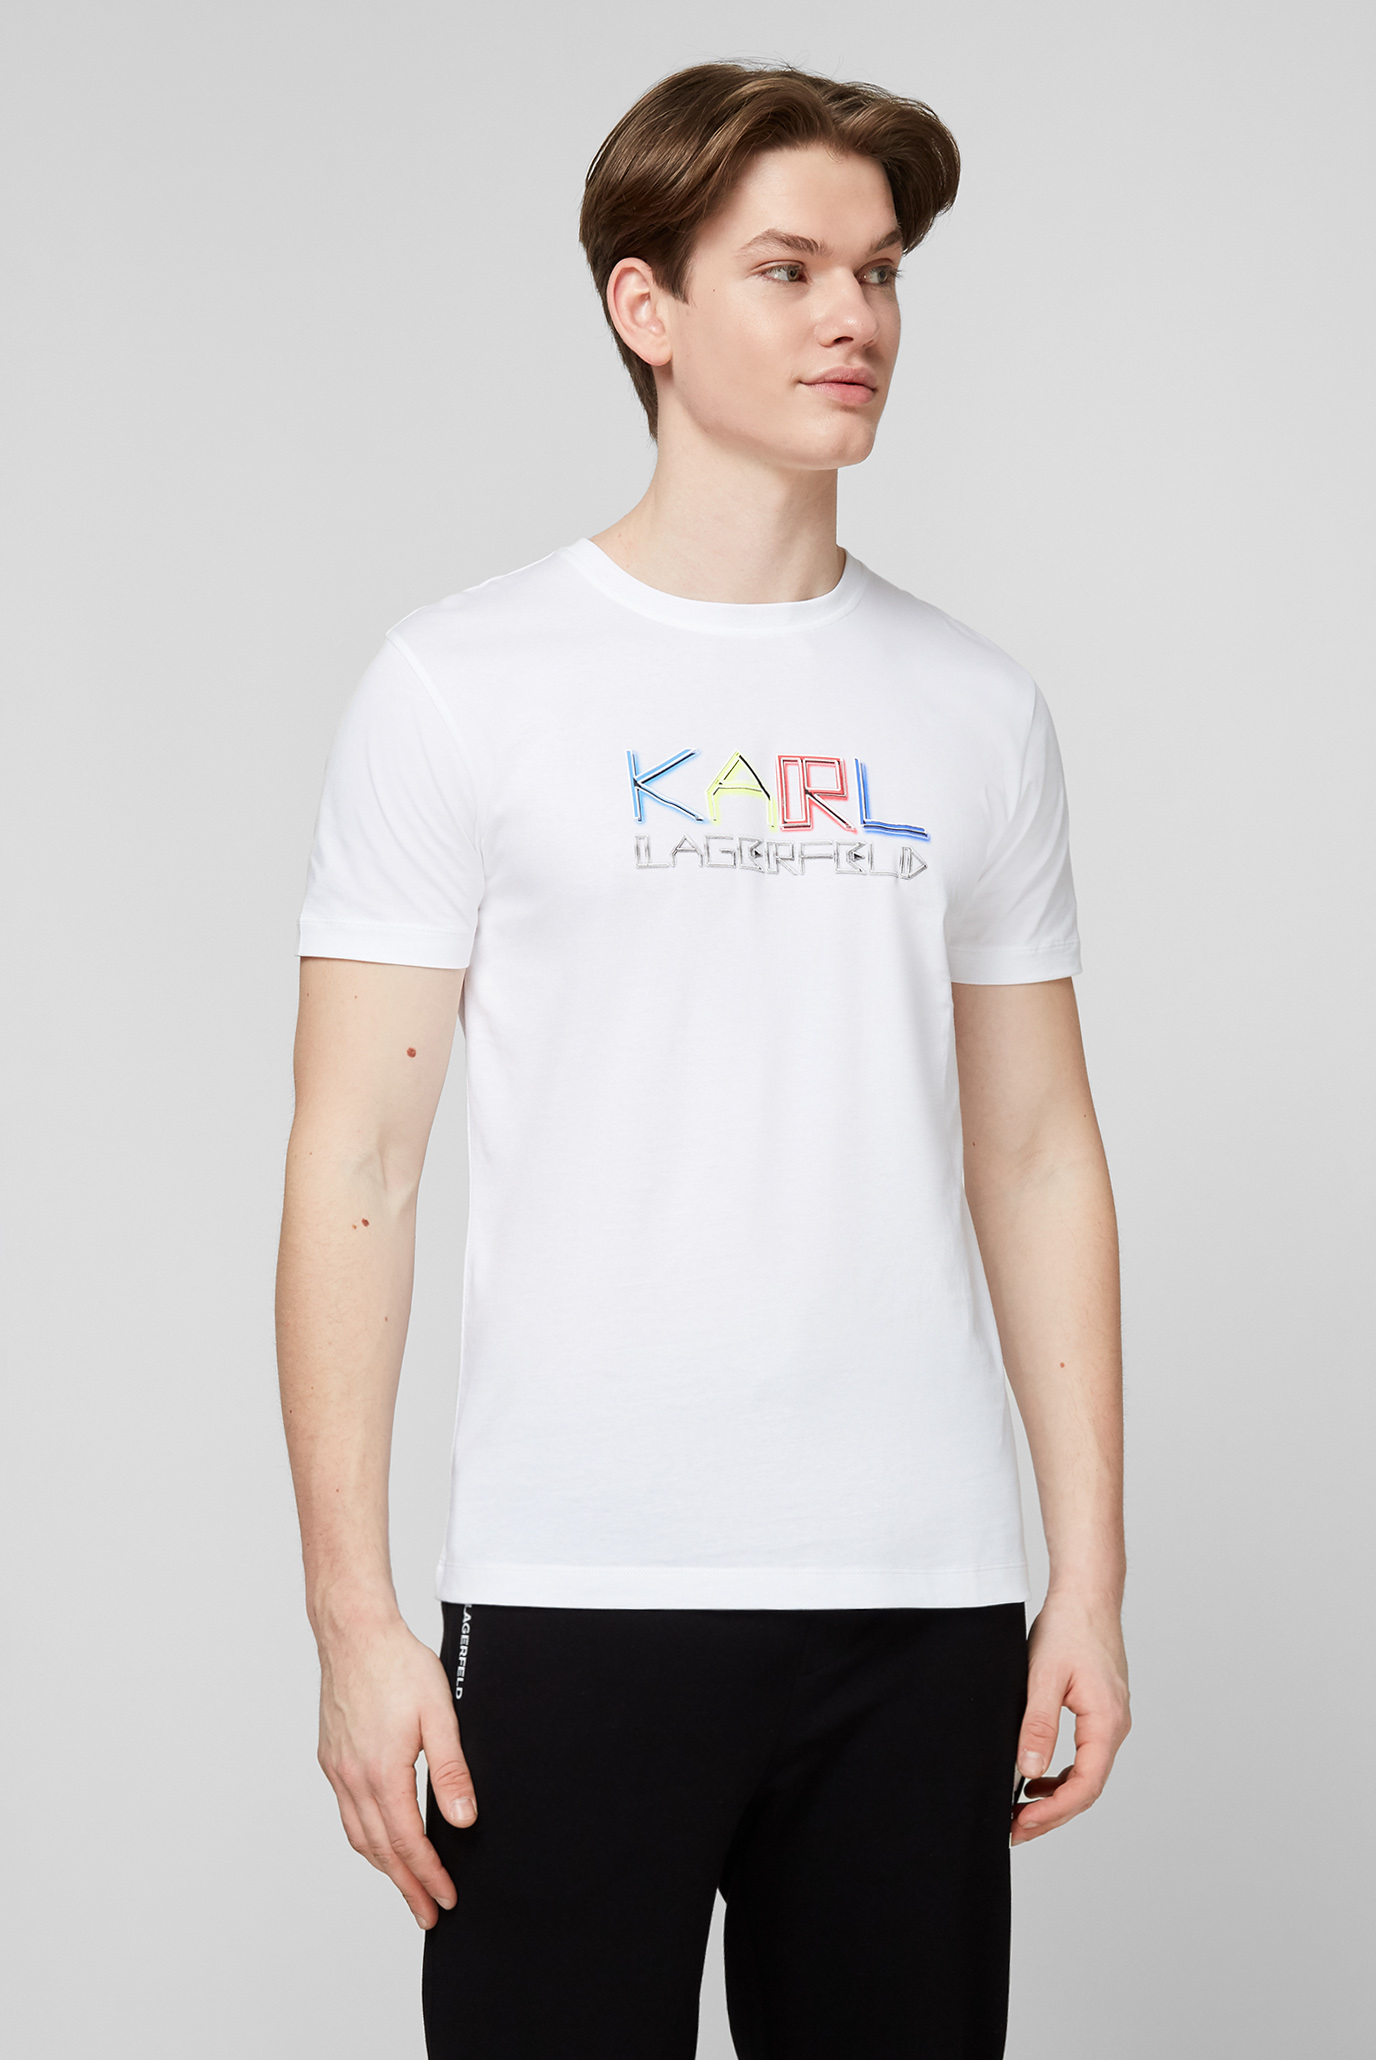 Біла футболка для хлопців Karl Lagerfeld 511240.755062;10